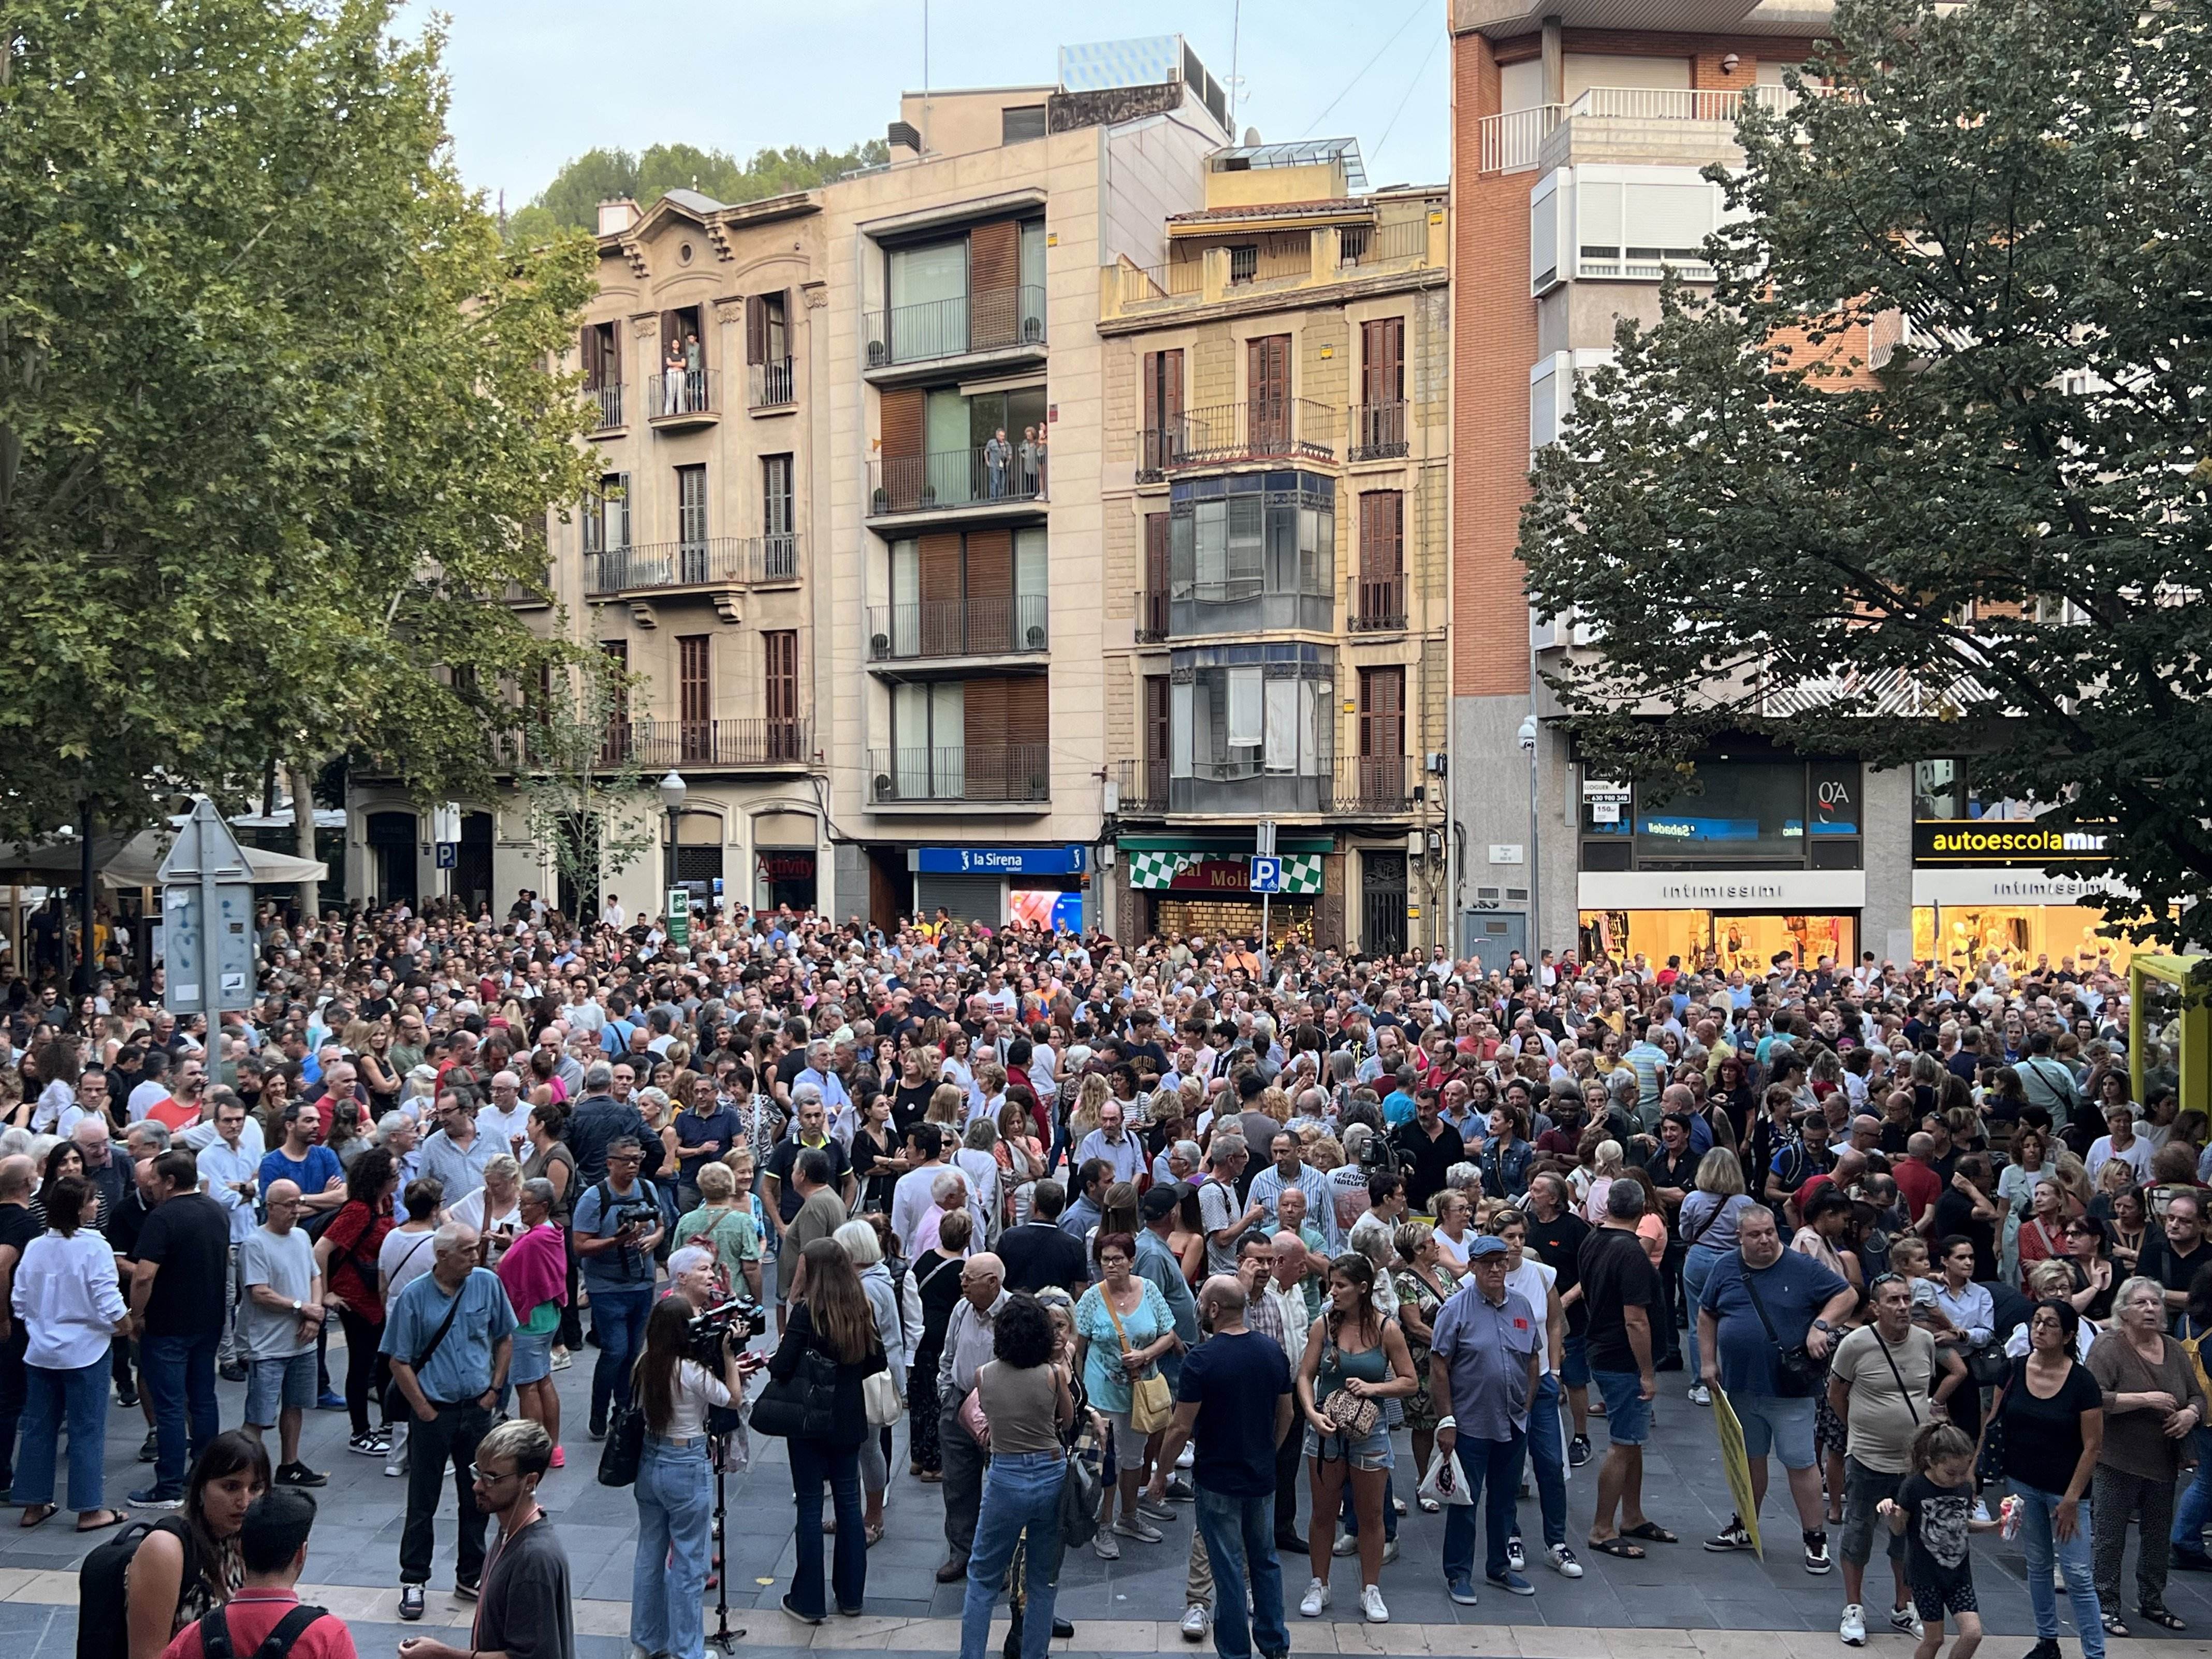 La pelea de Manresa hace colmar el vaso y saca a 2.000 personas a la calle para reclamar más seguridad